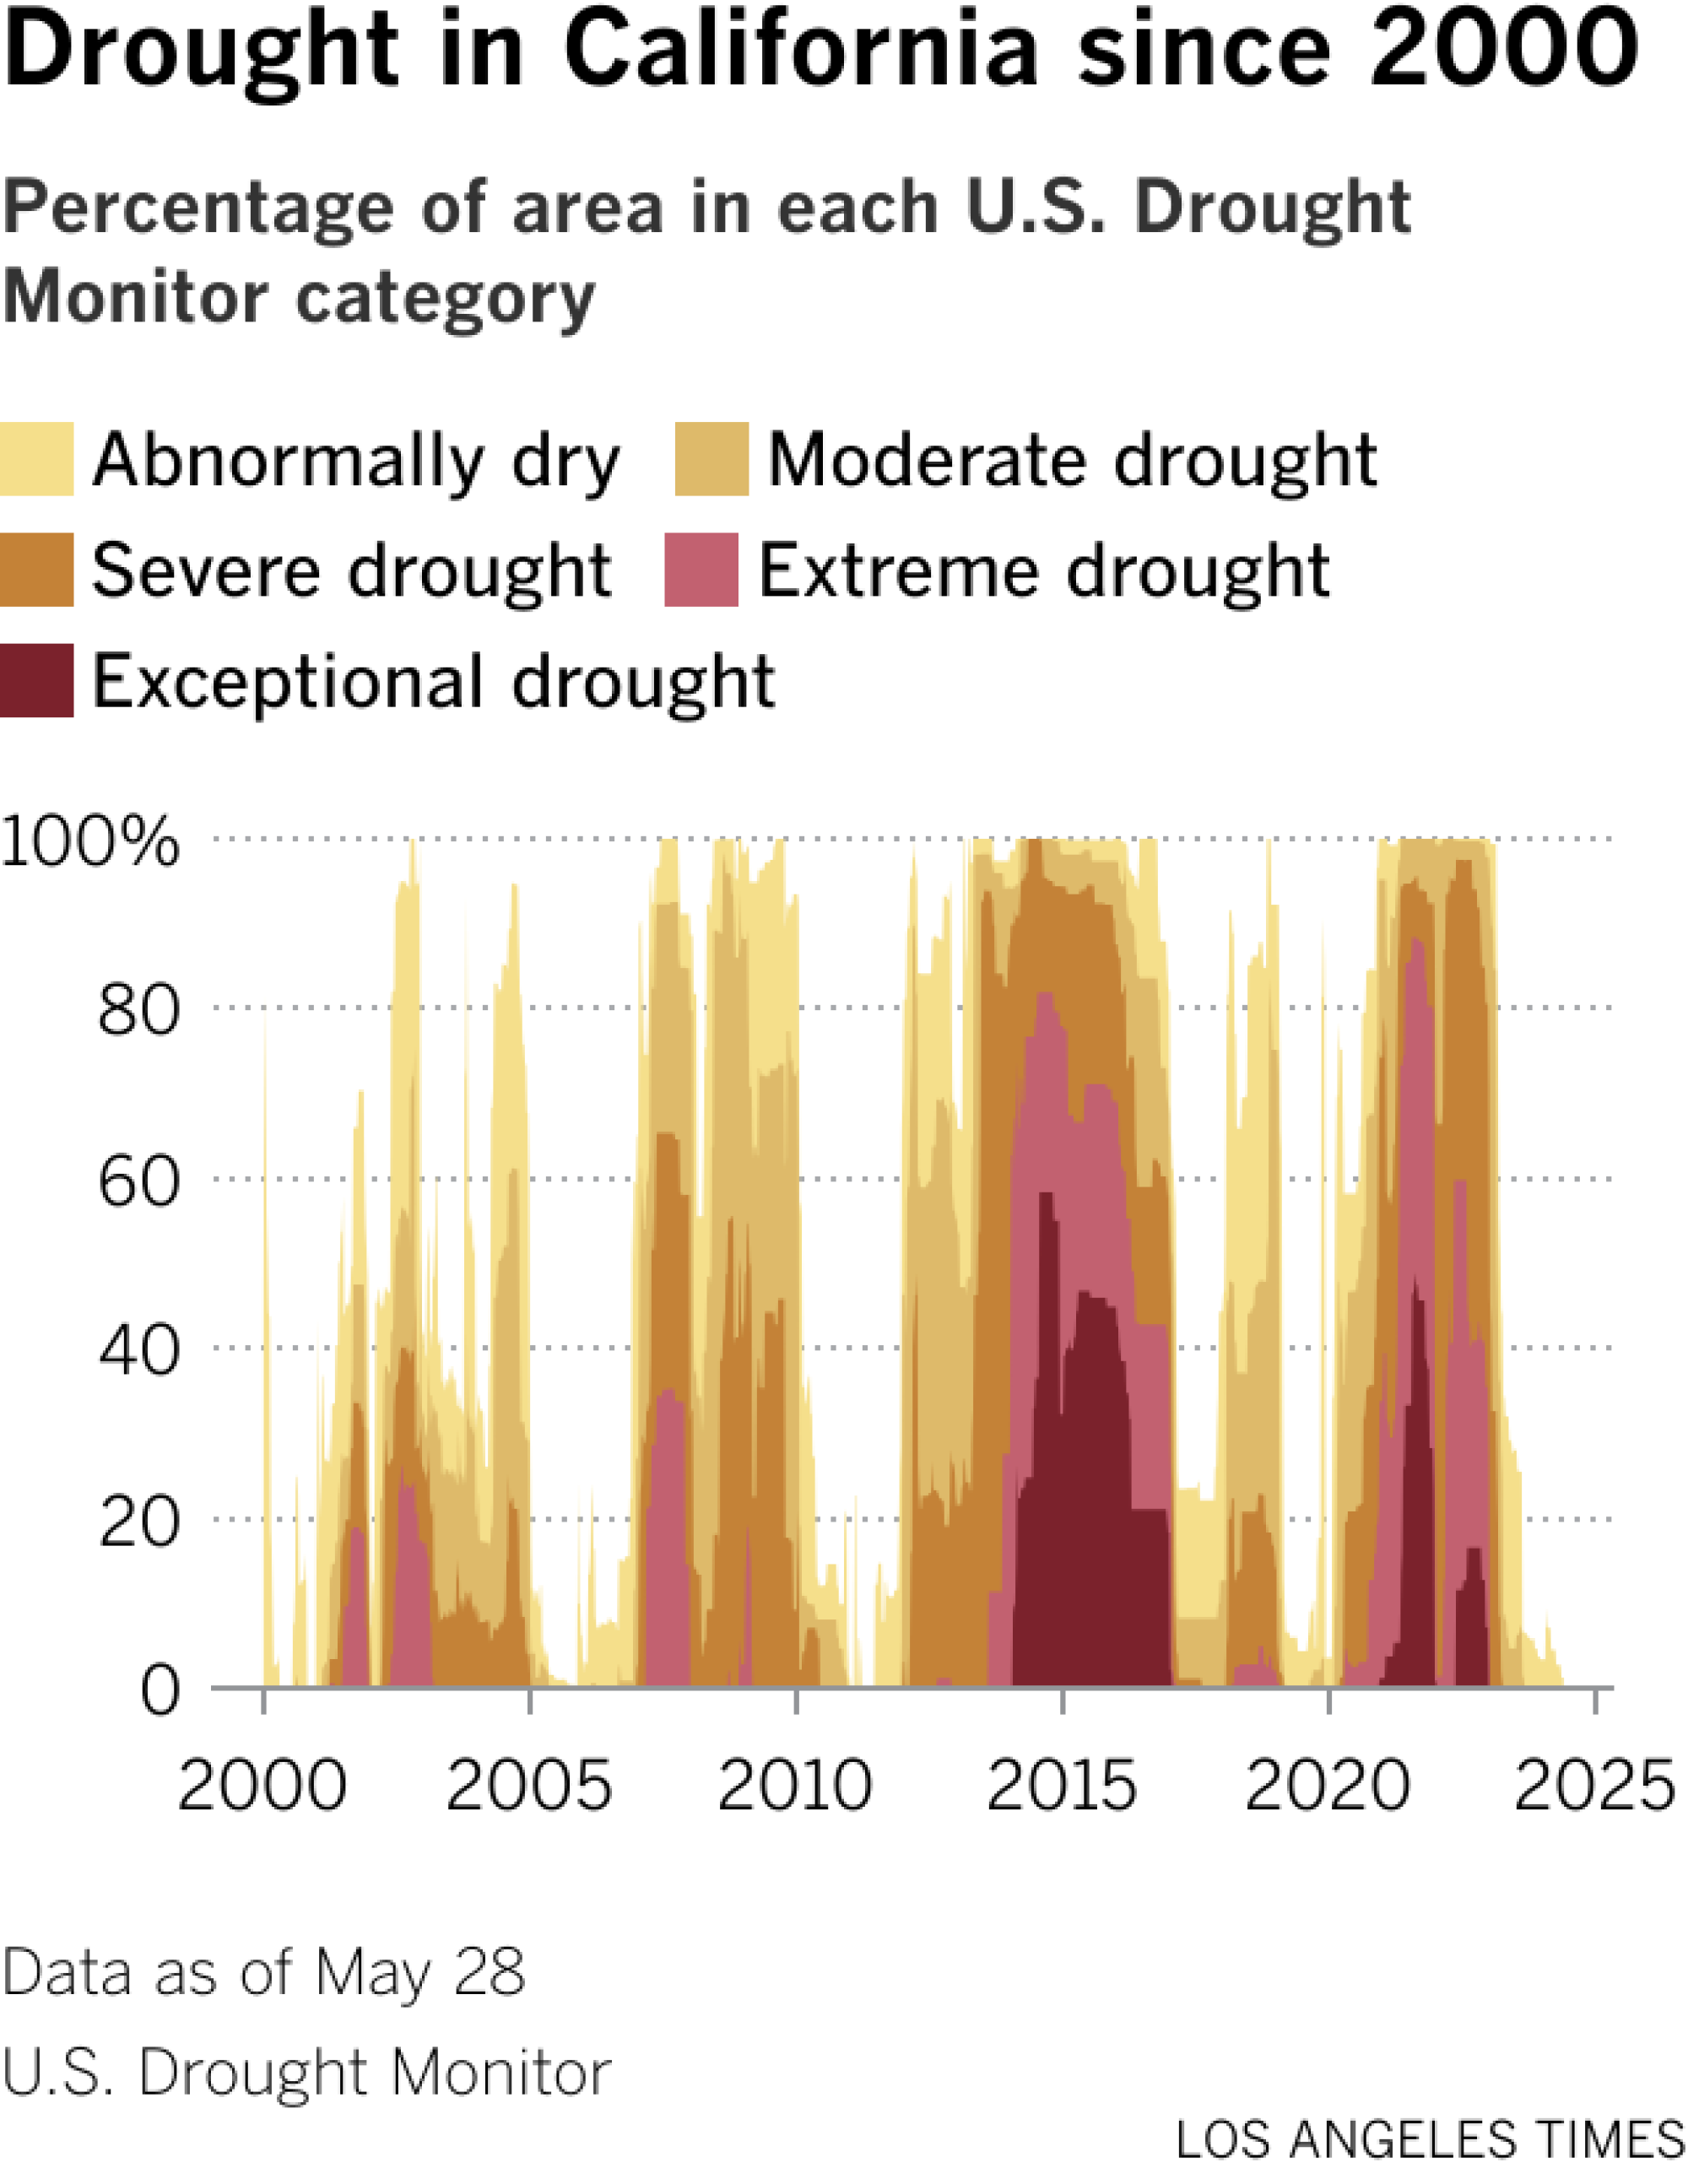 Un gráfico de capas muestra la progresión de las condiciones de sequía en California desde 2000